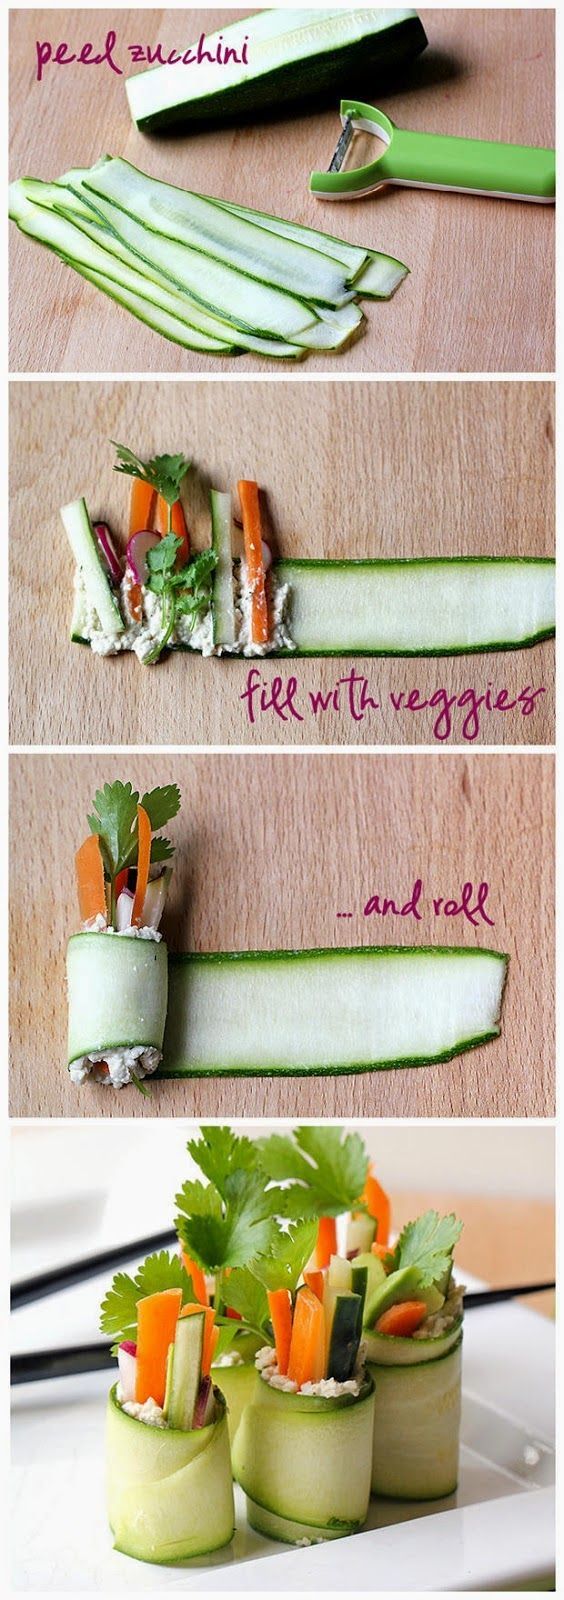 Raw Zucchini “Sushi” Rolls ~ Freshdreamer (Id probably use goat cheese or a yogurt/feta